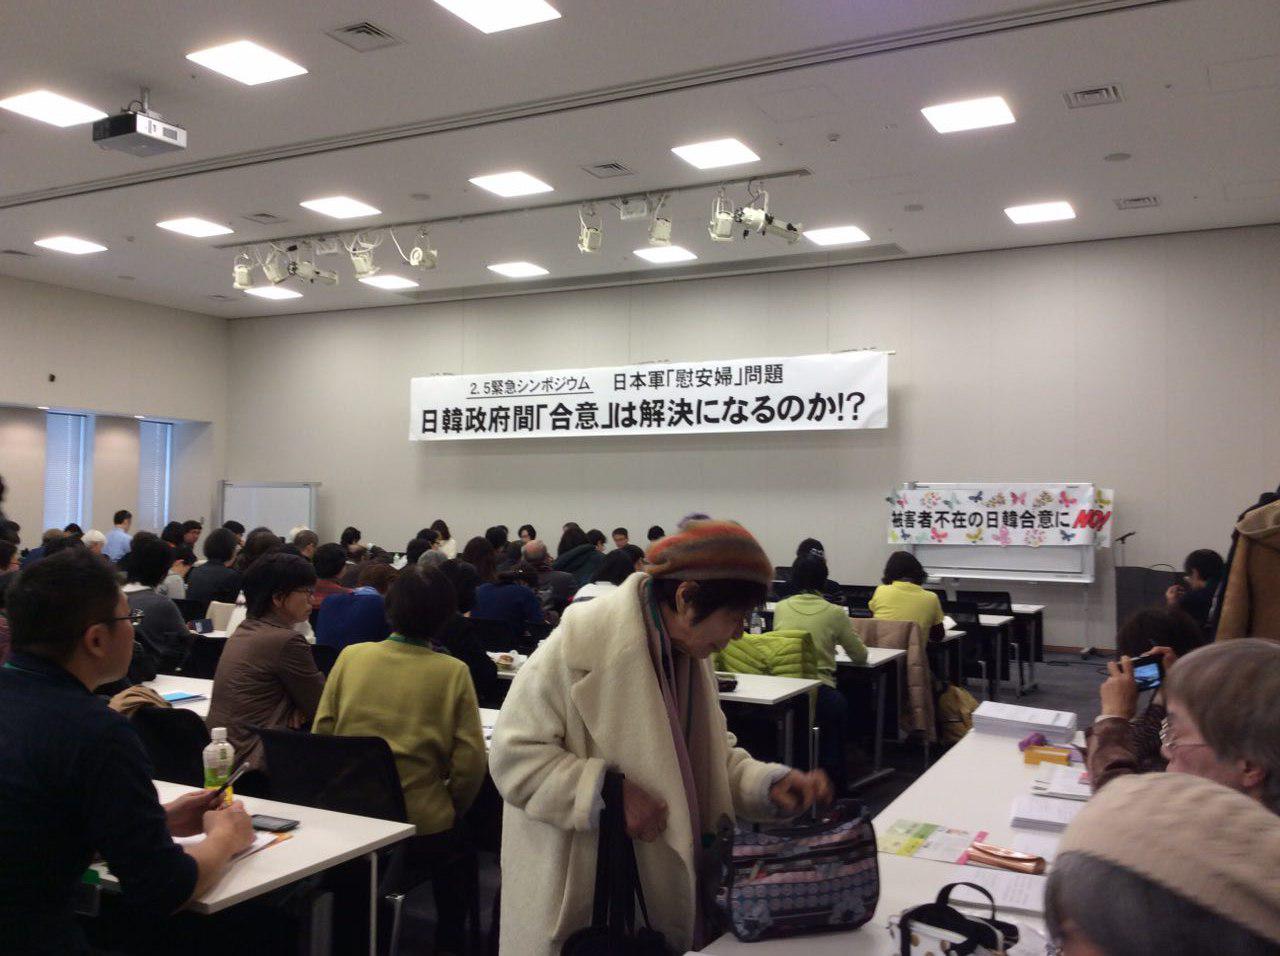 일본군 '위안부' 문제해결전국행동 주최로, 2월 5일 도쿄 중의원 회관에서 열린 위안부 긴급 심포지엄